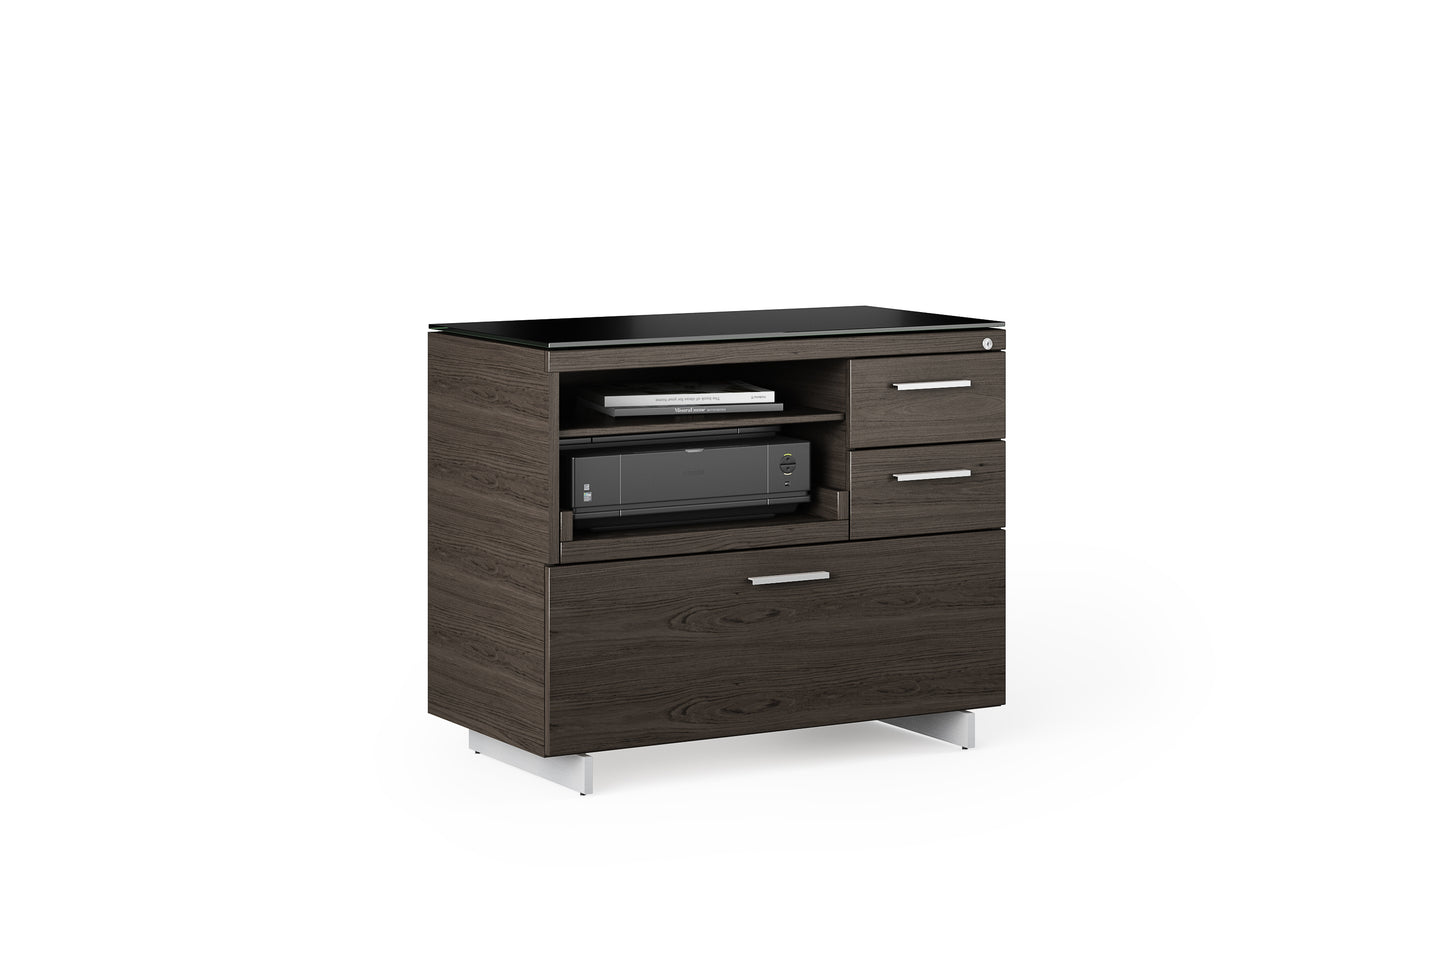 Sequel 6117 Multifunction Storage & Printer Cabinet